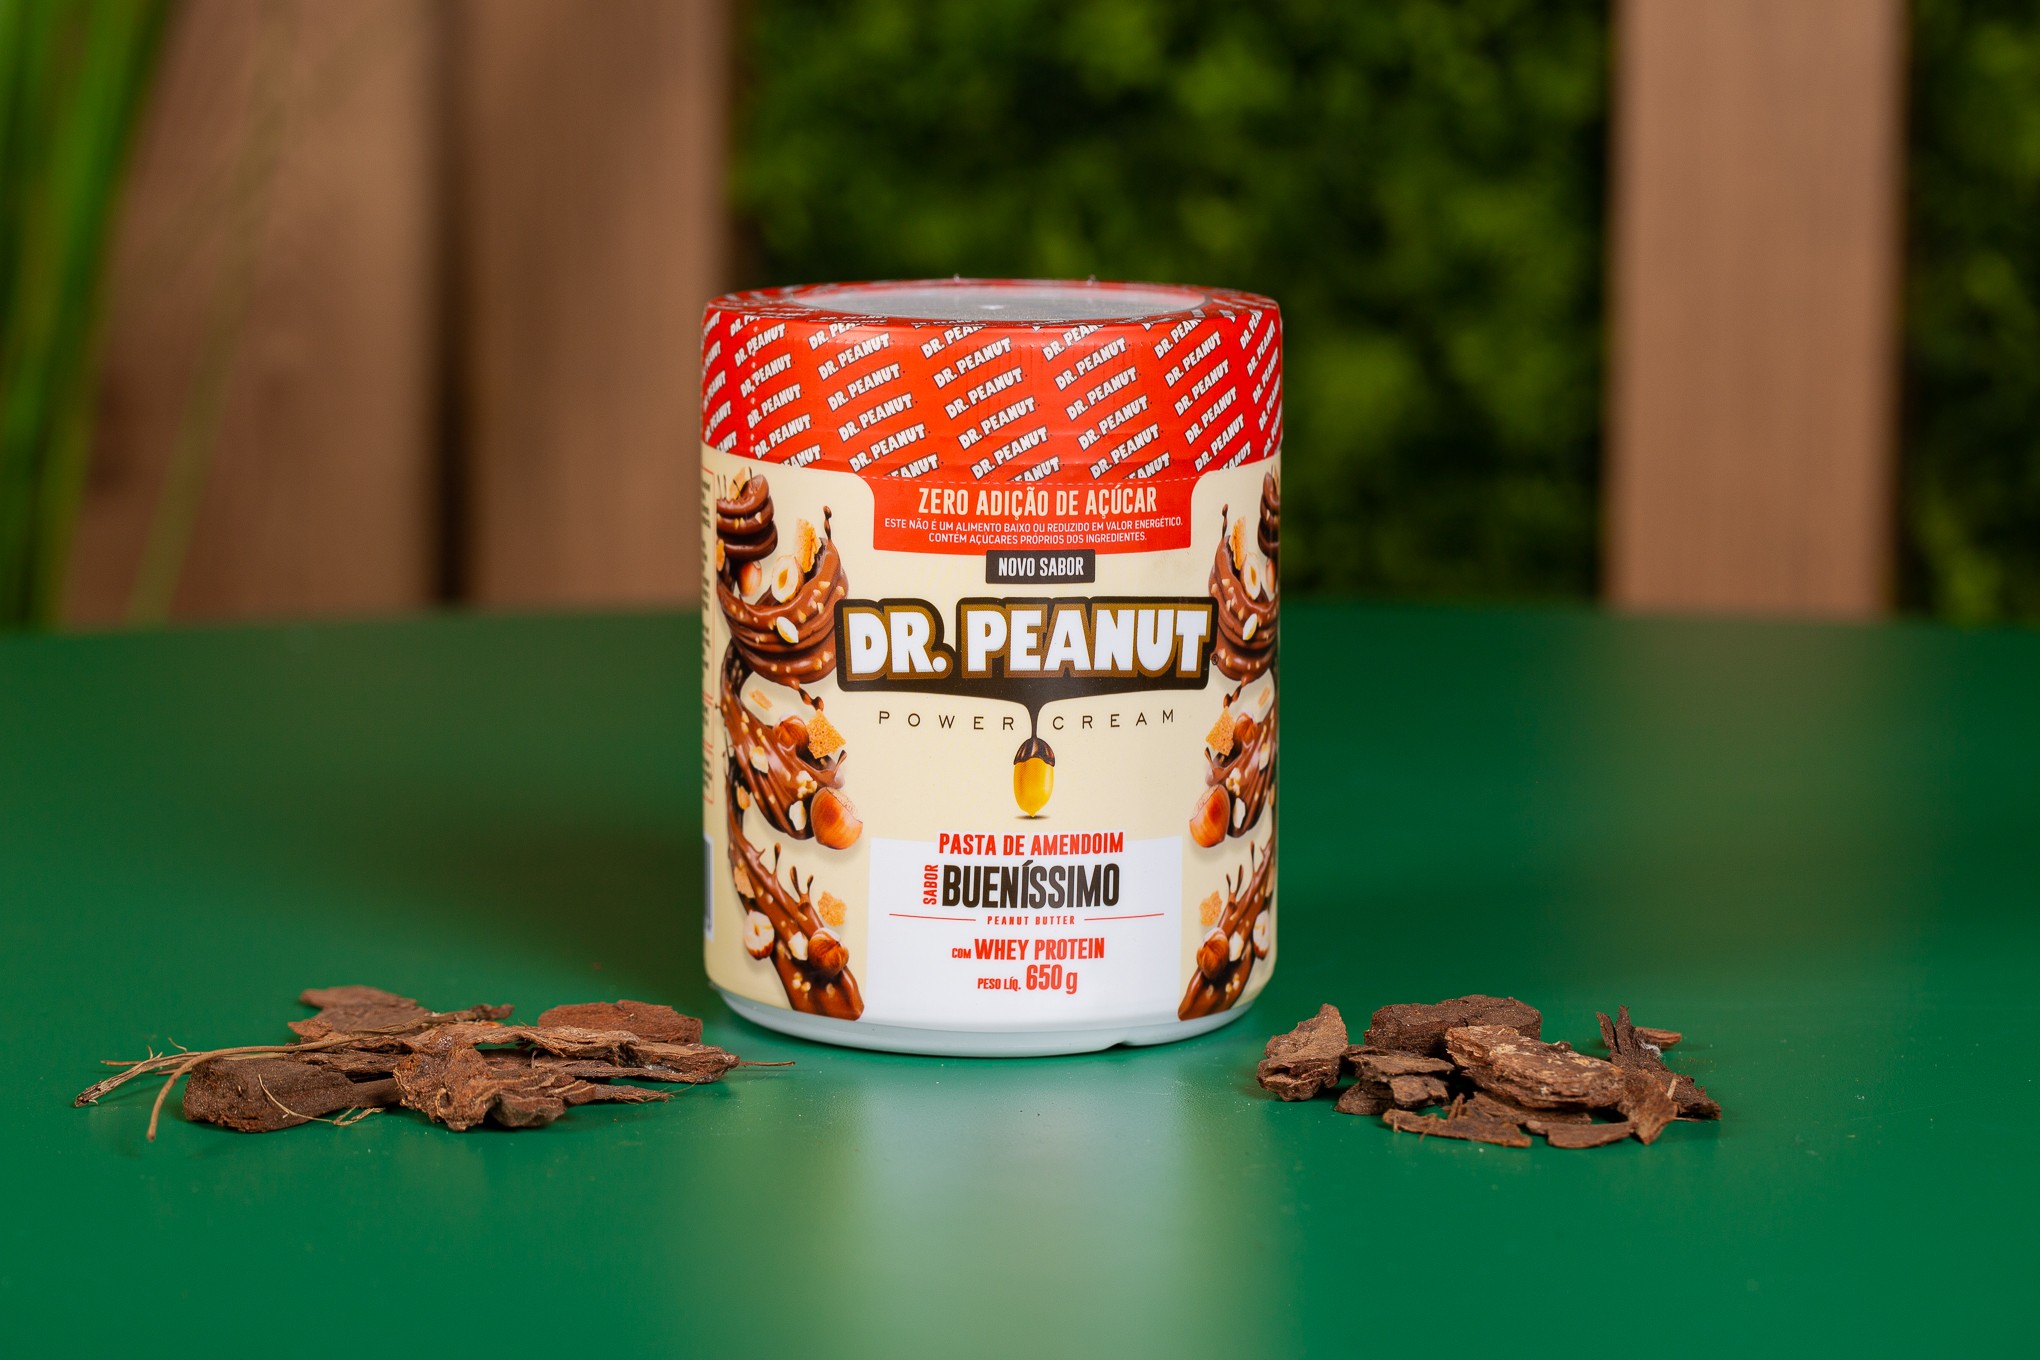 https://biomundocampinas.com.br/400/pasta-de-amendoim-buenissimo-650-gramas-dr-peanut.jpg